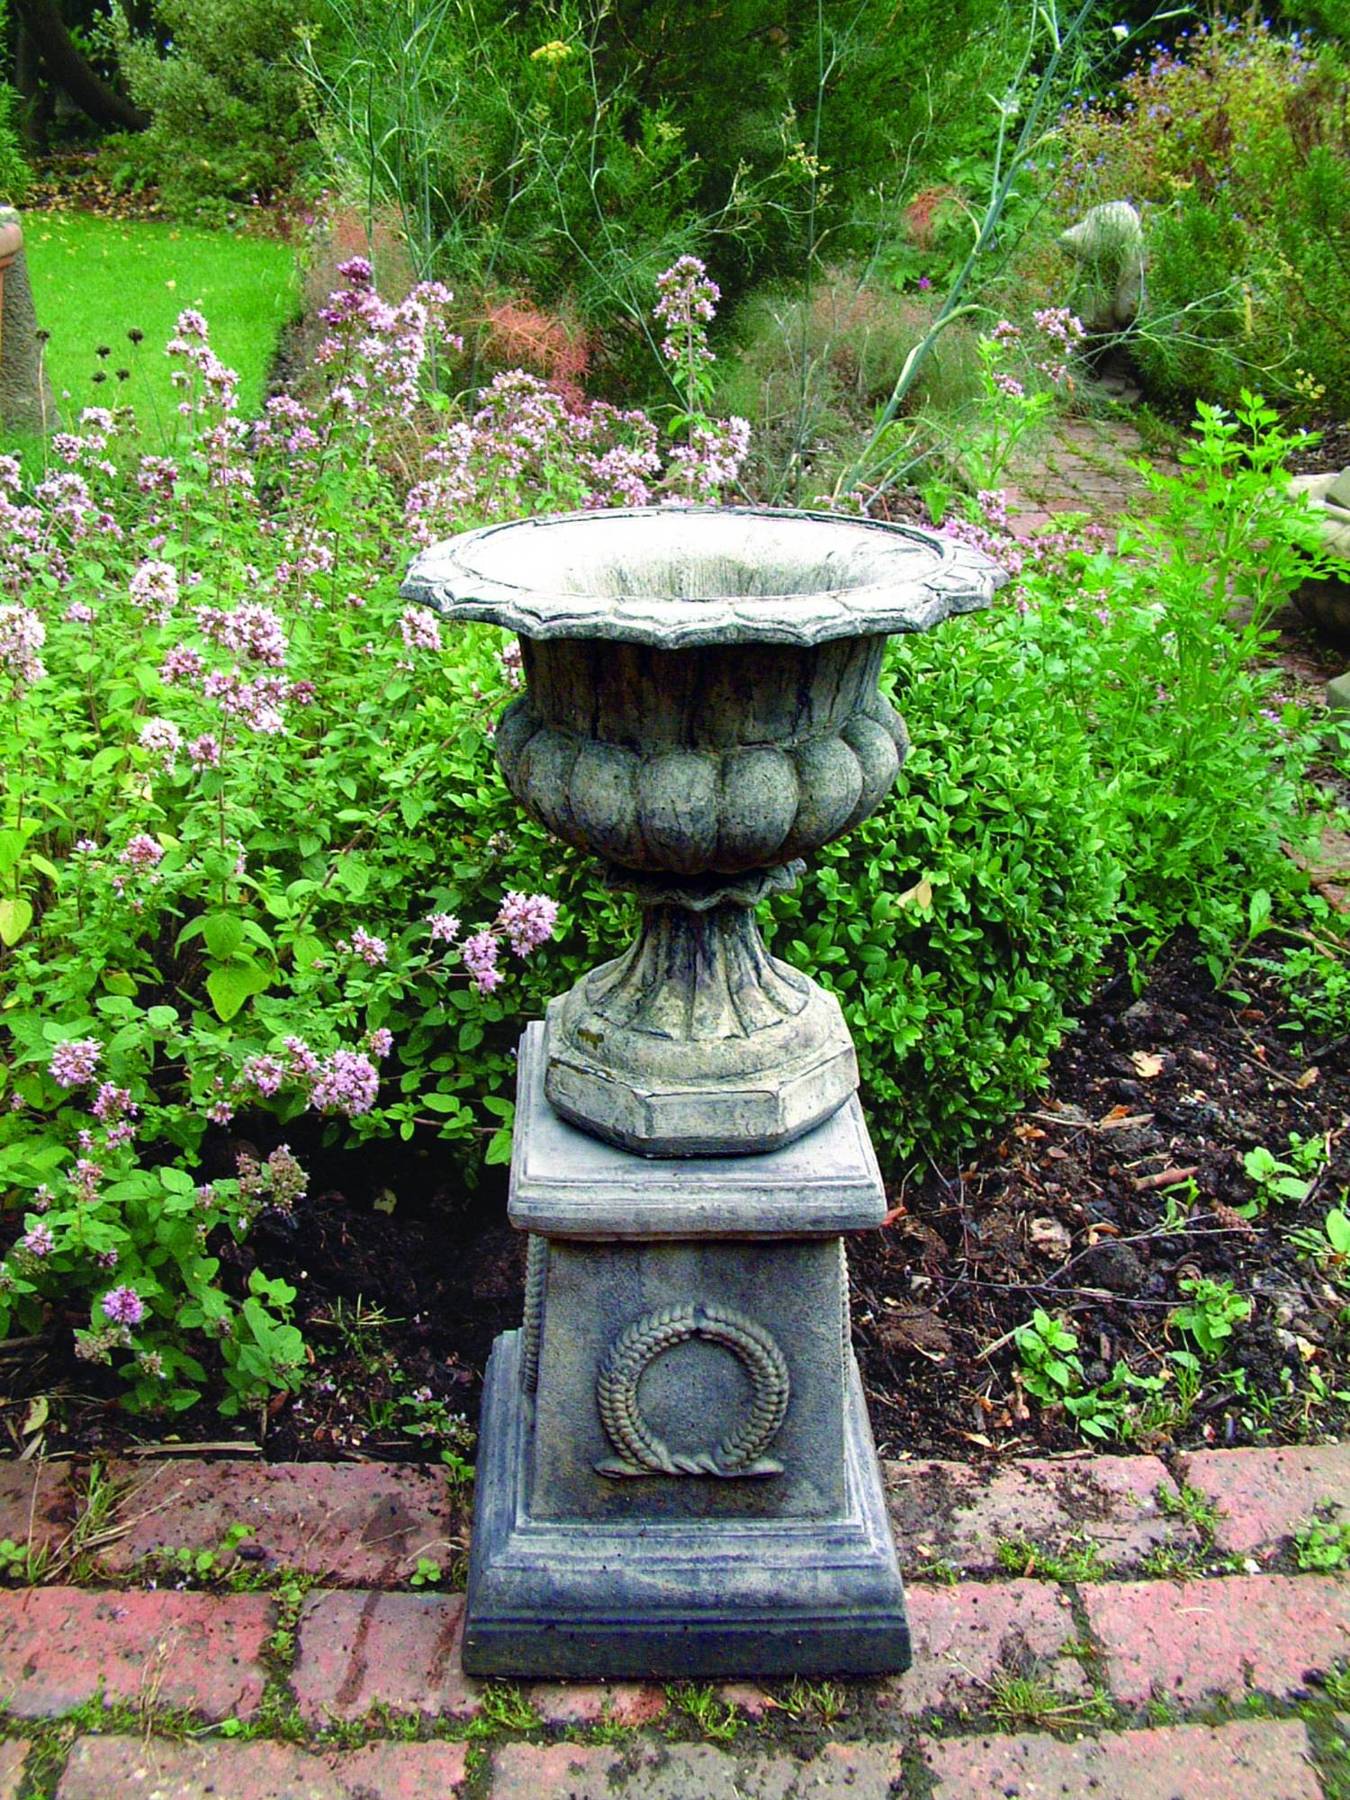 stone garden pedestals